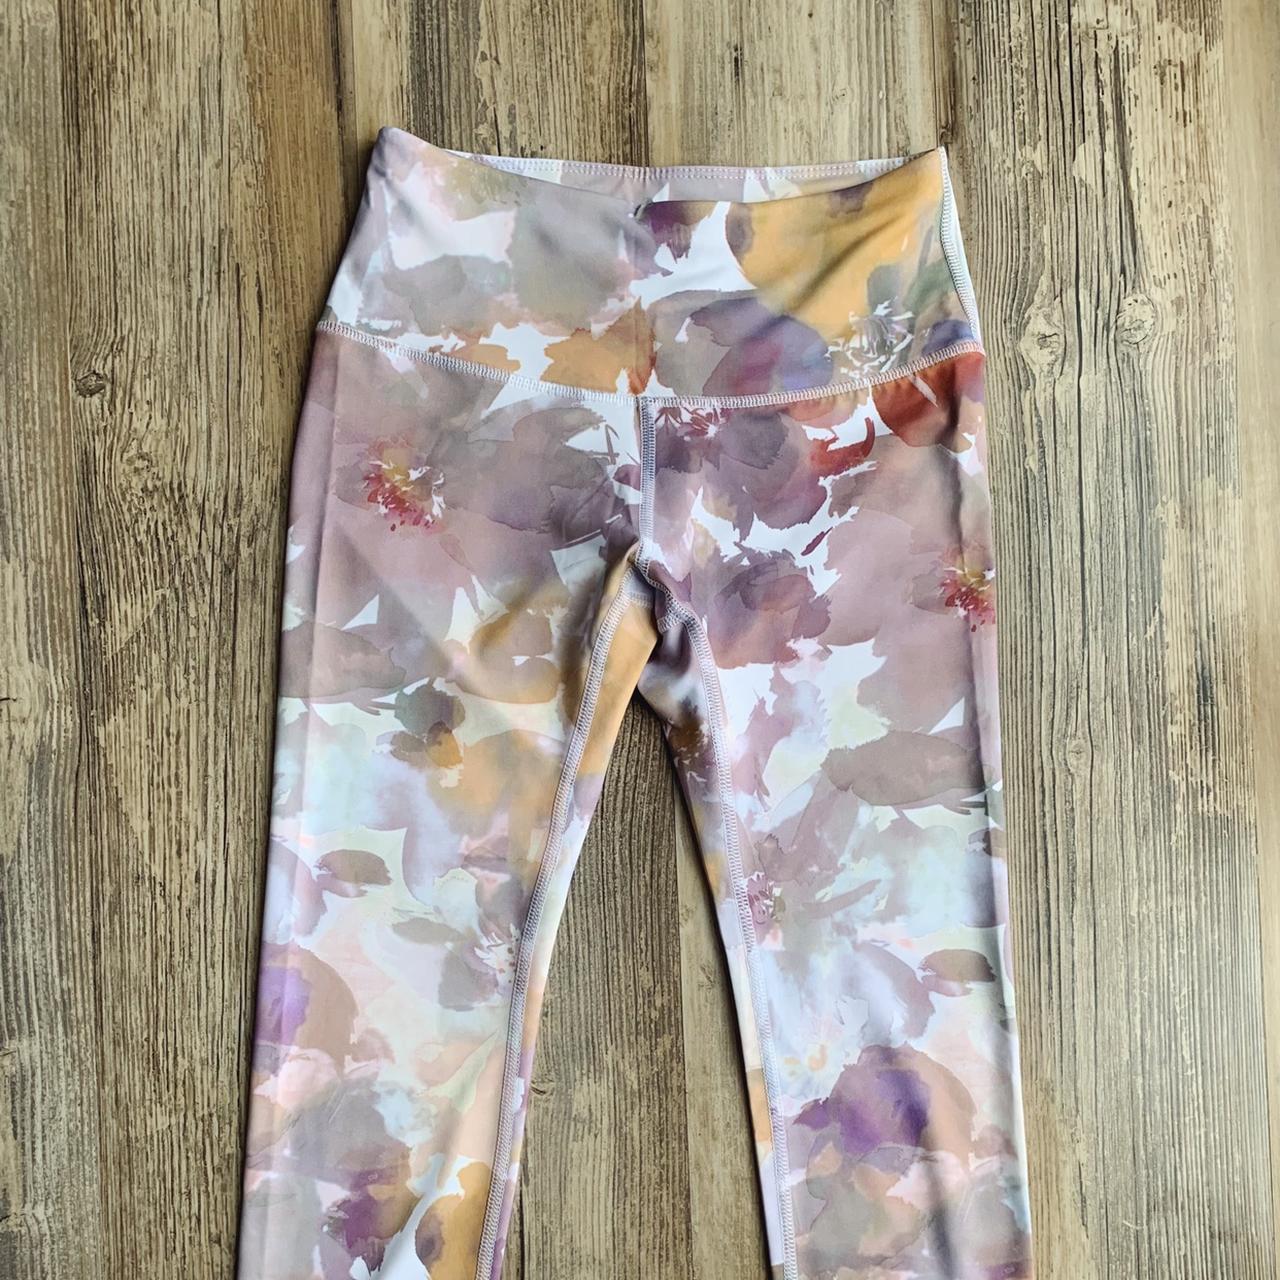 NWOT floral watercolor Apana yoga pants - Depop